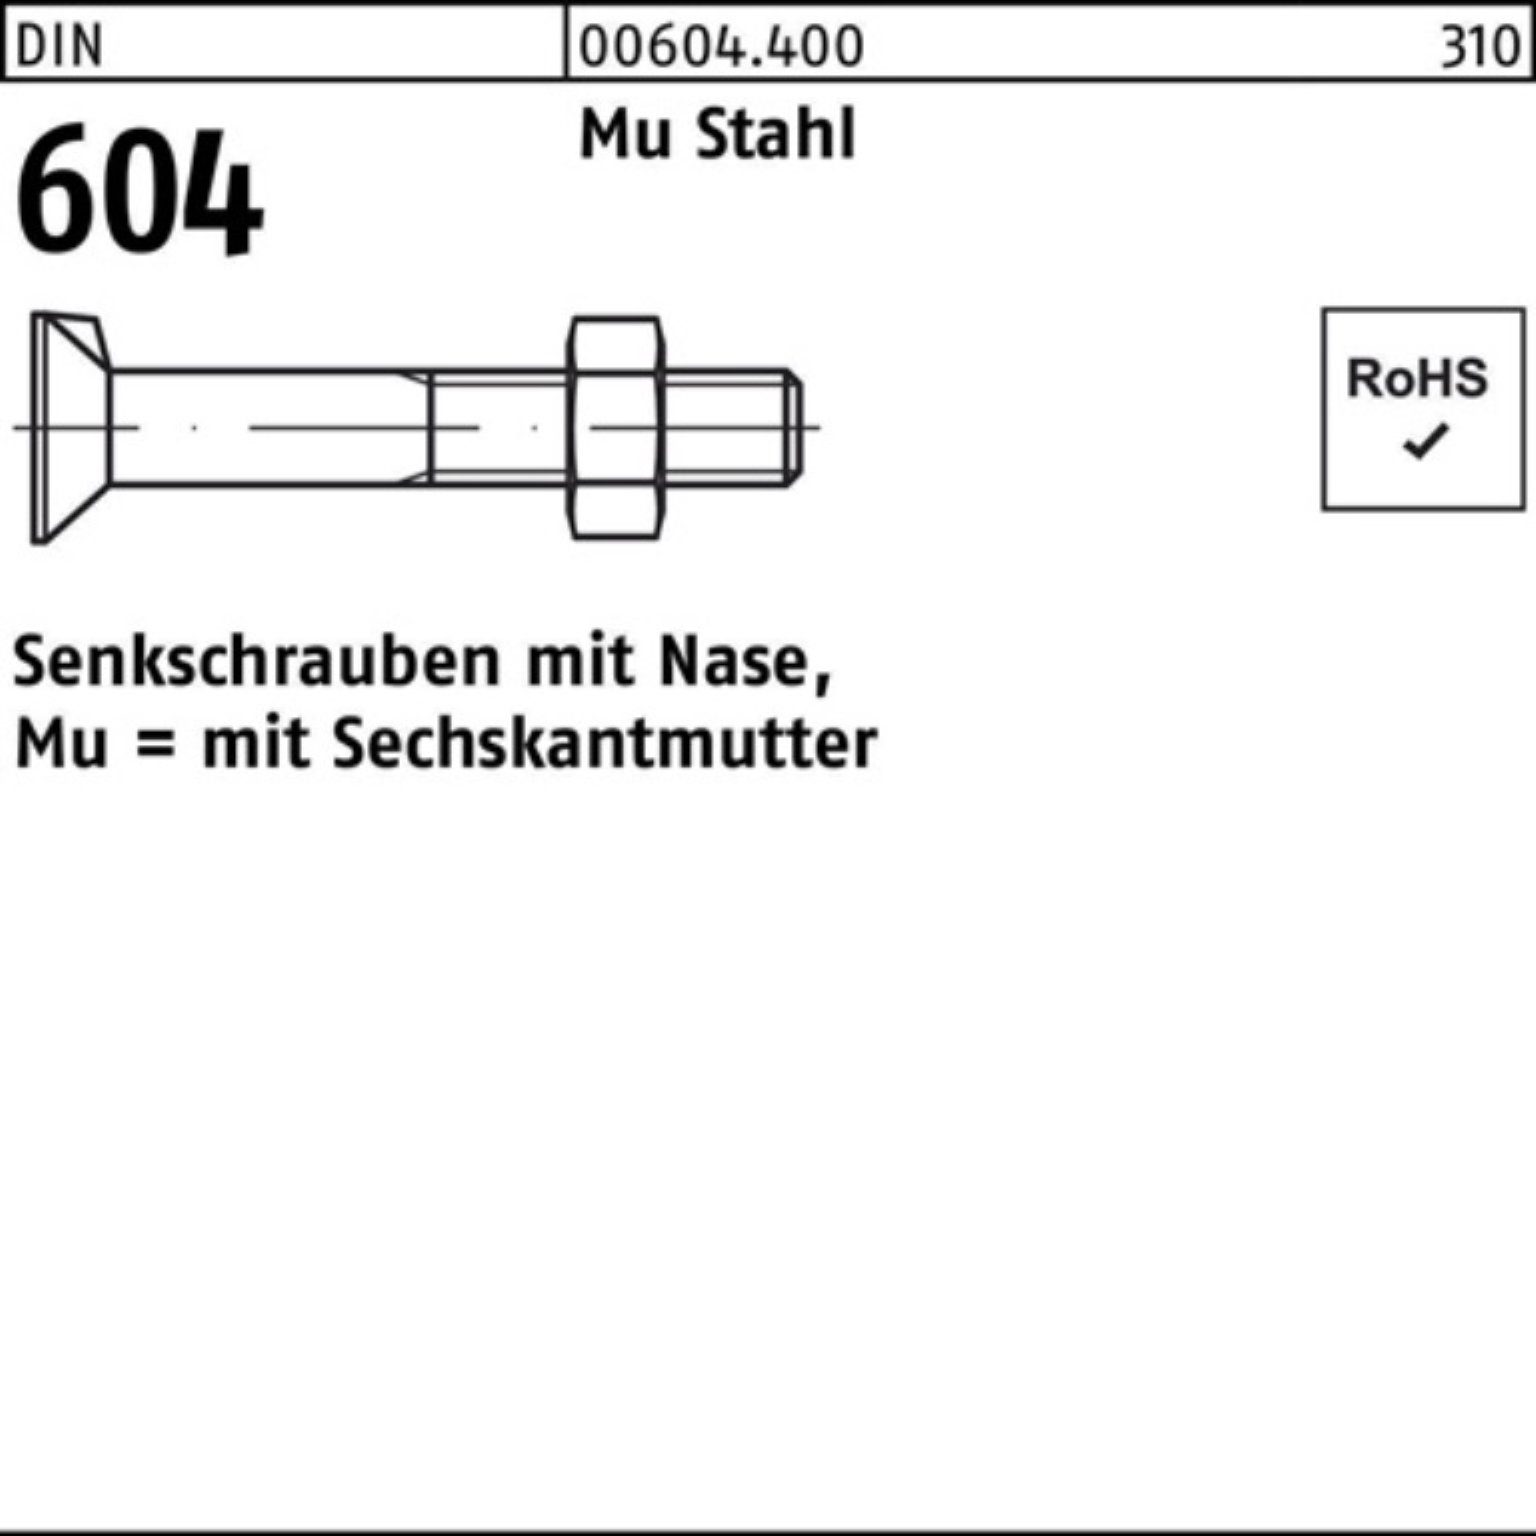 Reyher Senkschraube 100er Pack Senkschraube 110 DIN 604 Mu Nase/6-ktmutter M20x Stahl 4.6